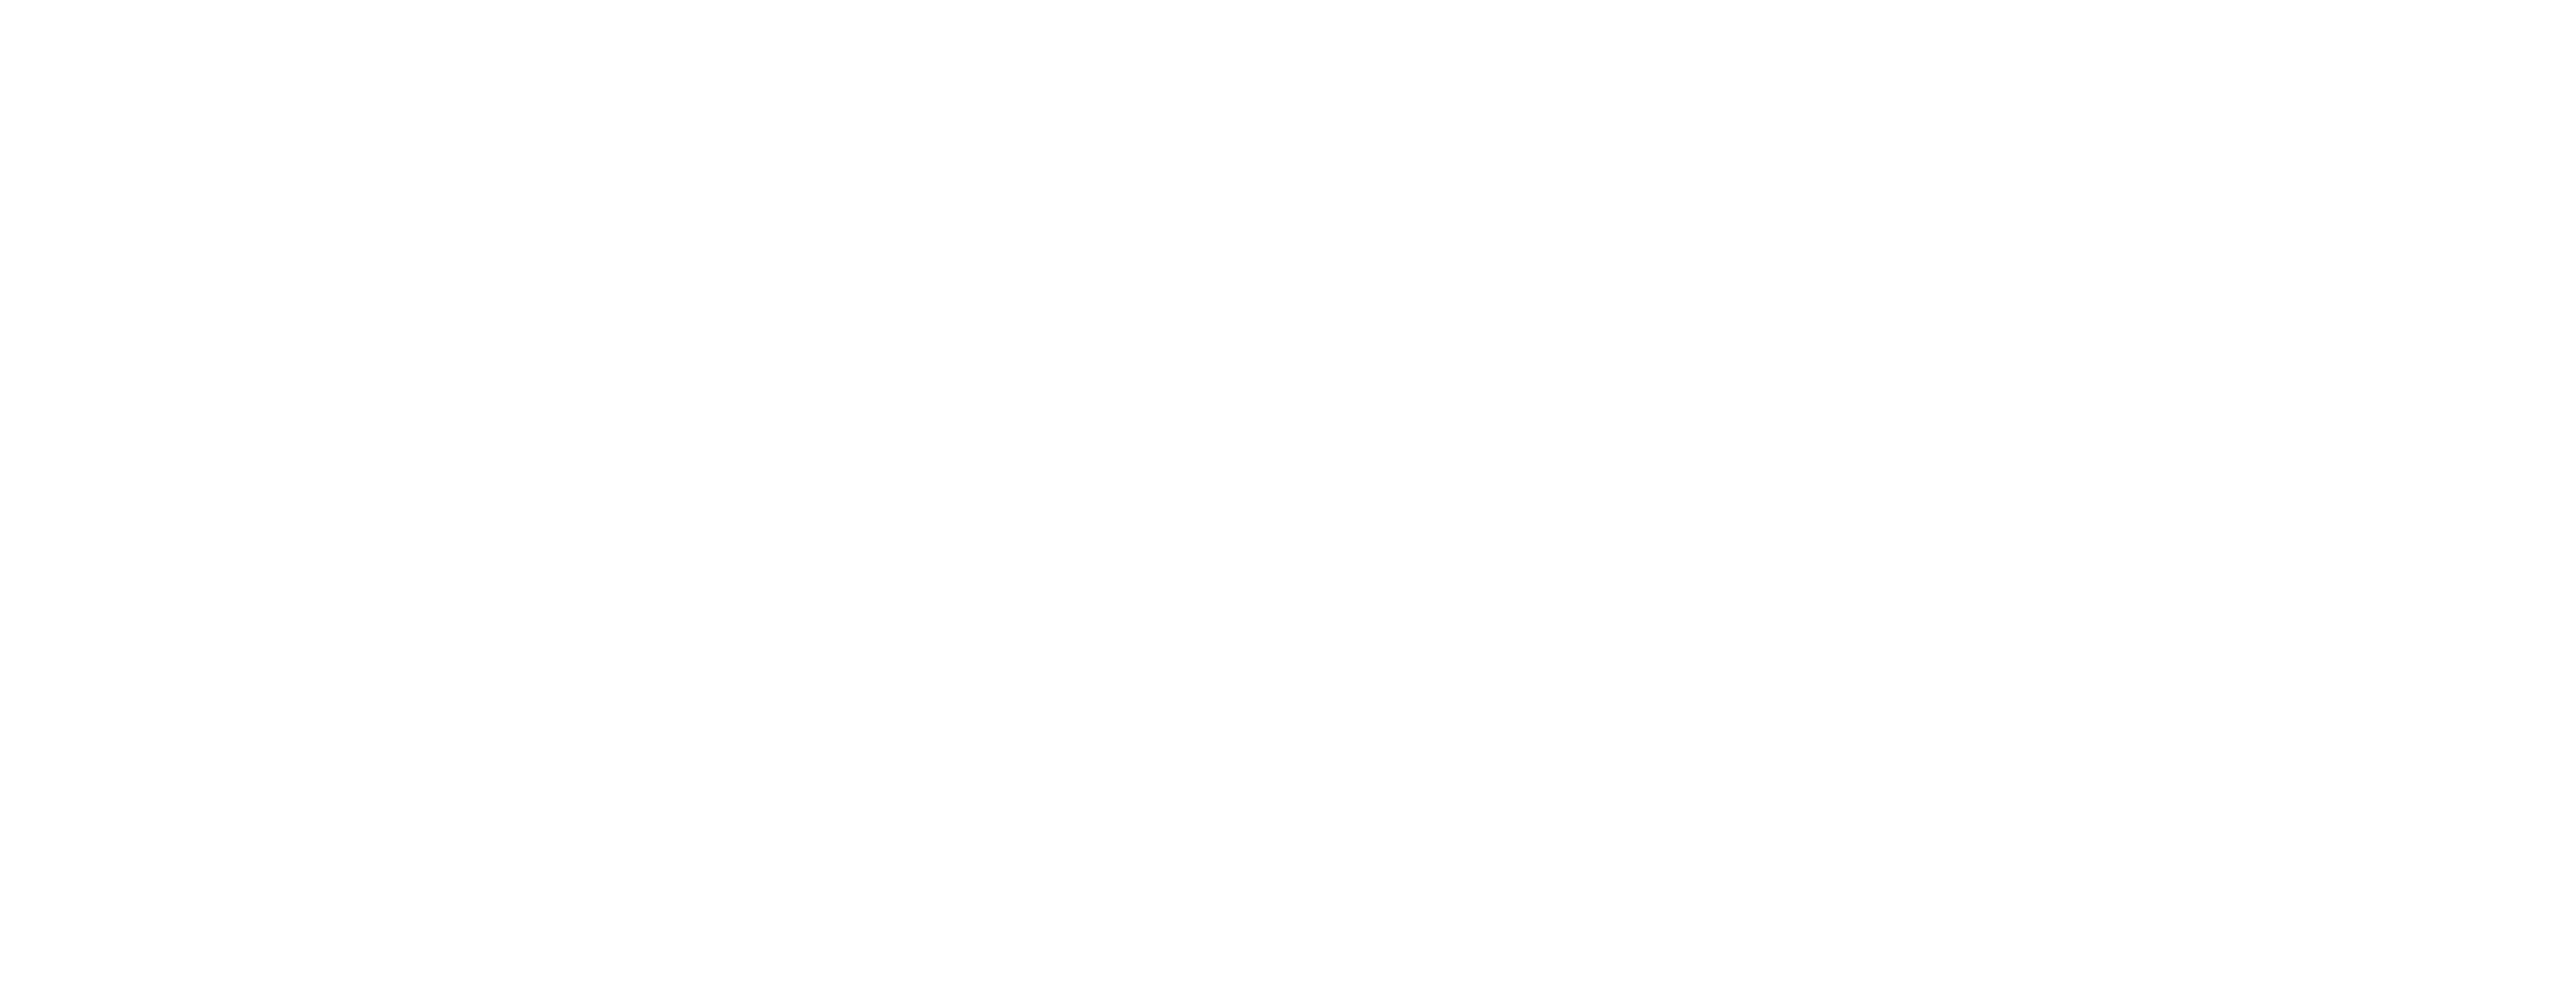 print-joiner-insurance-white